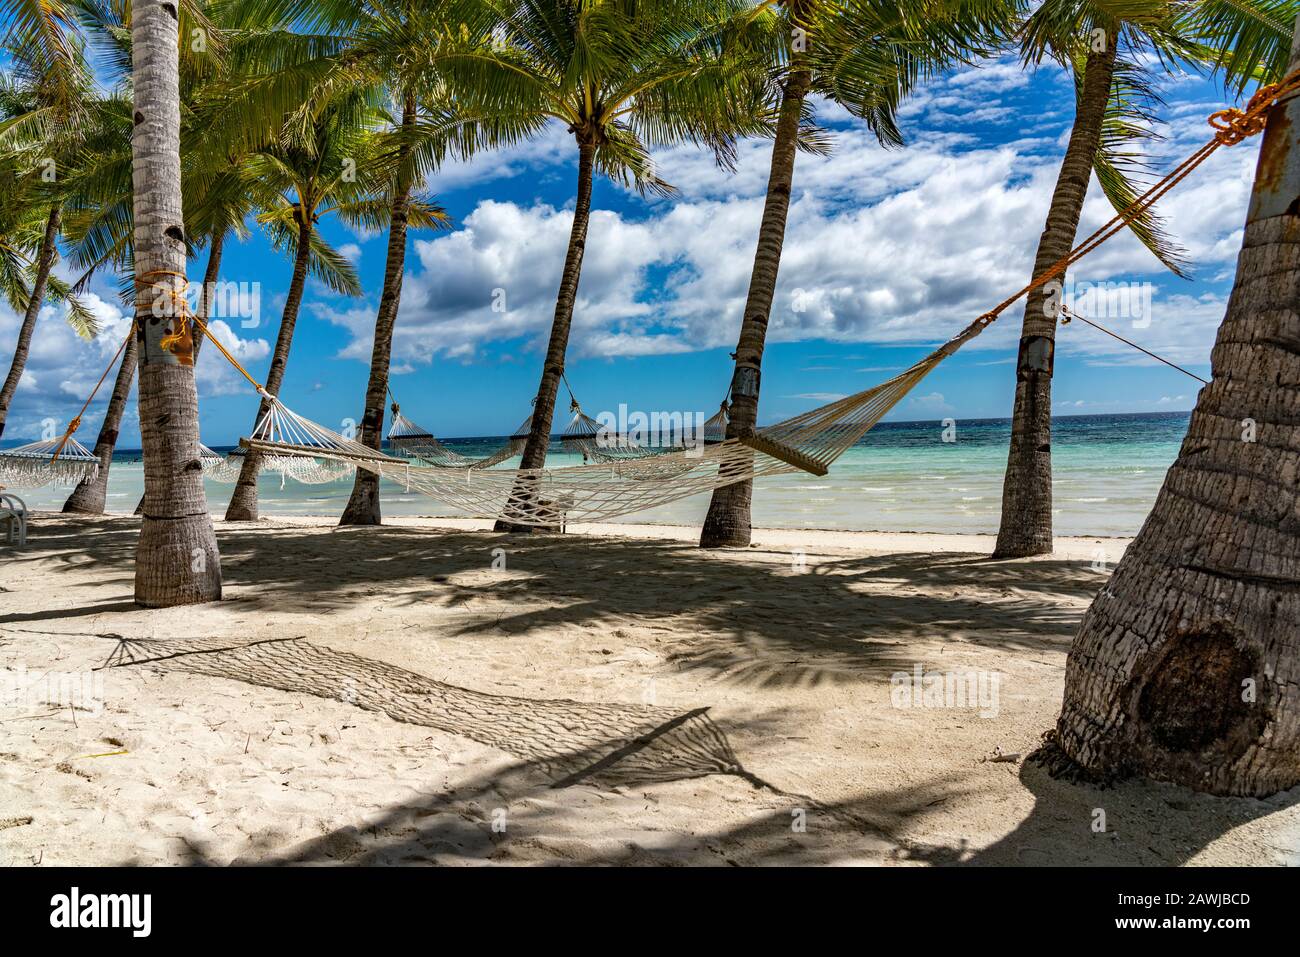 2019: Playa tropical de arena blanca de Bohol, Philiipines Foto de stock